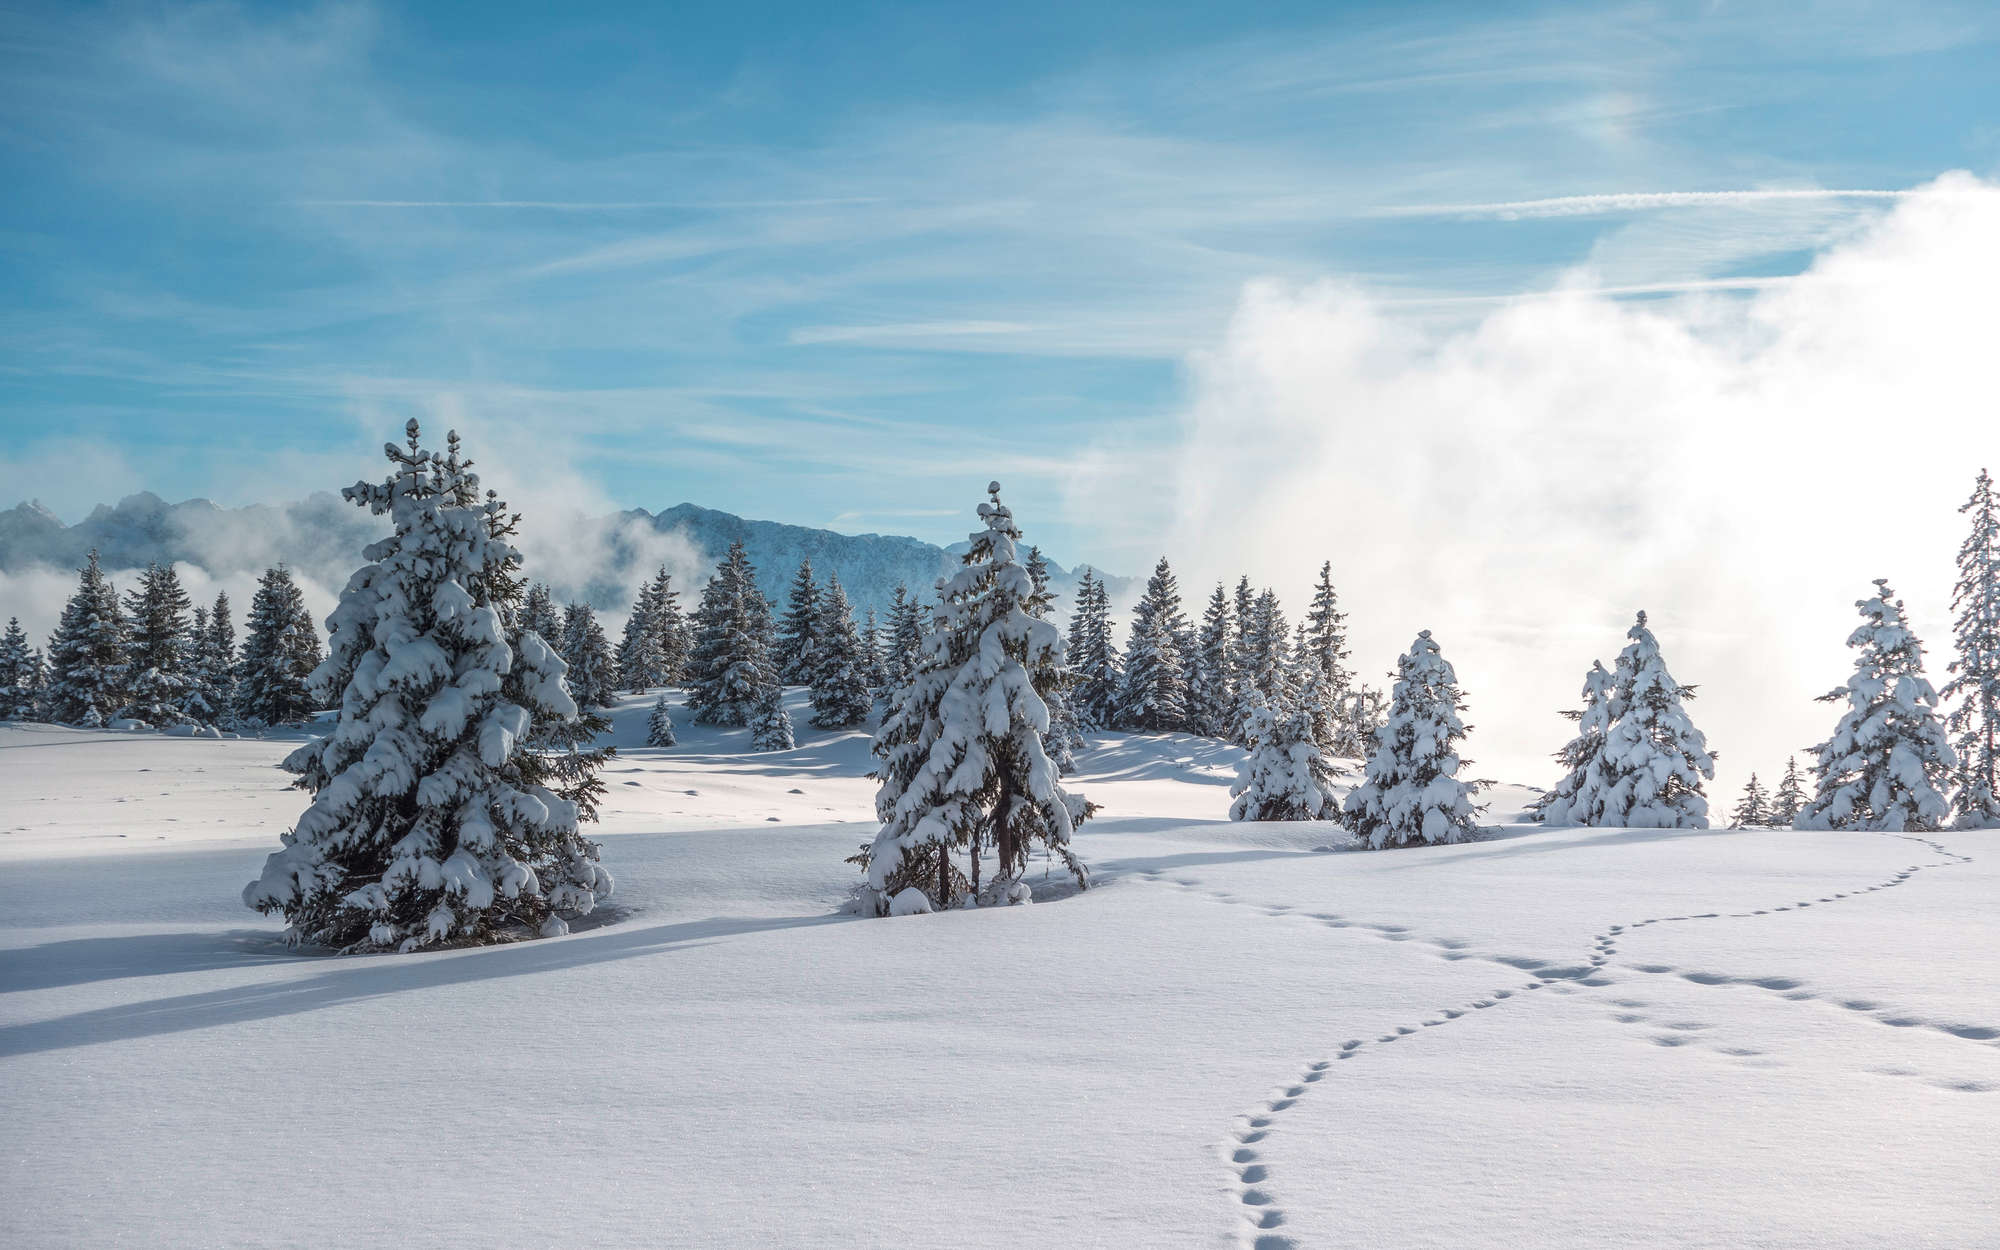             Fotomurali Neve e impronte nella foresta invernale - Pile liscio premium
        